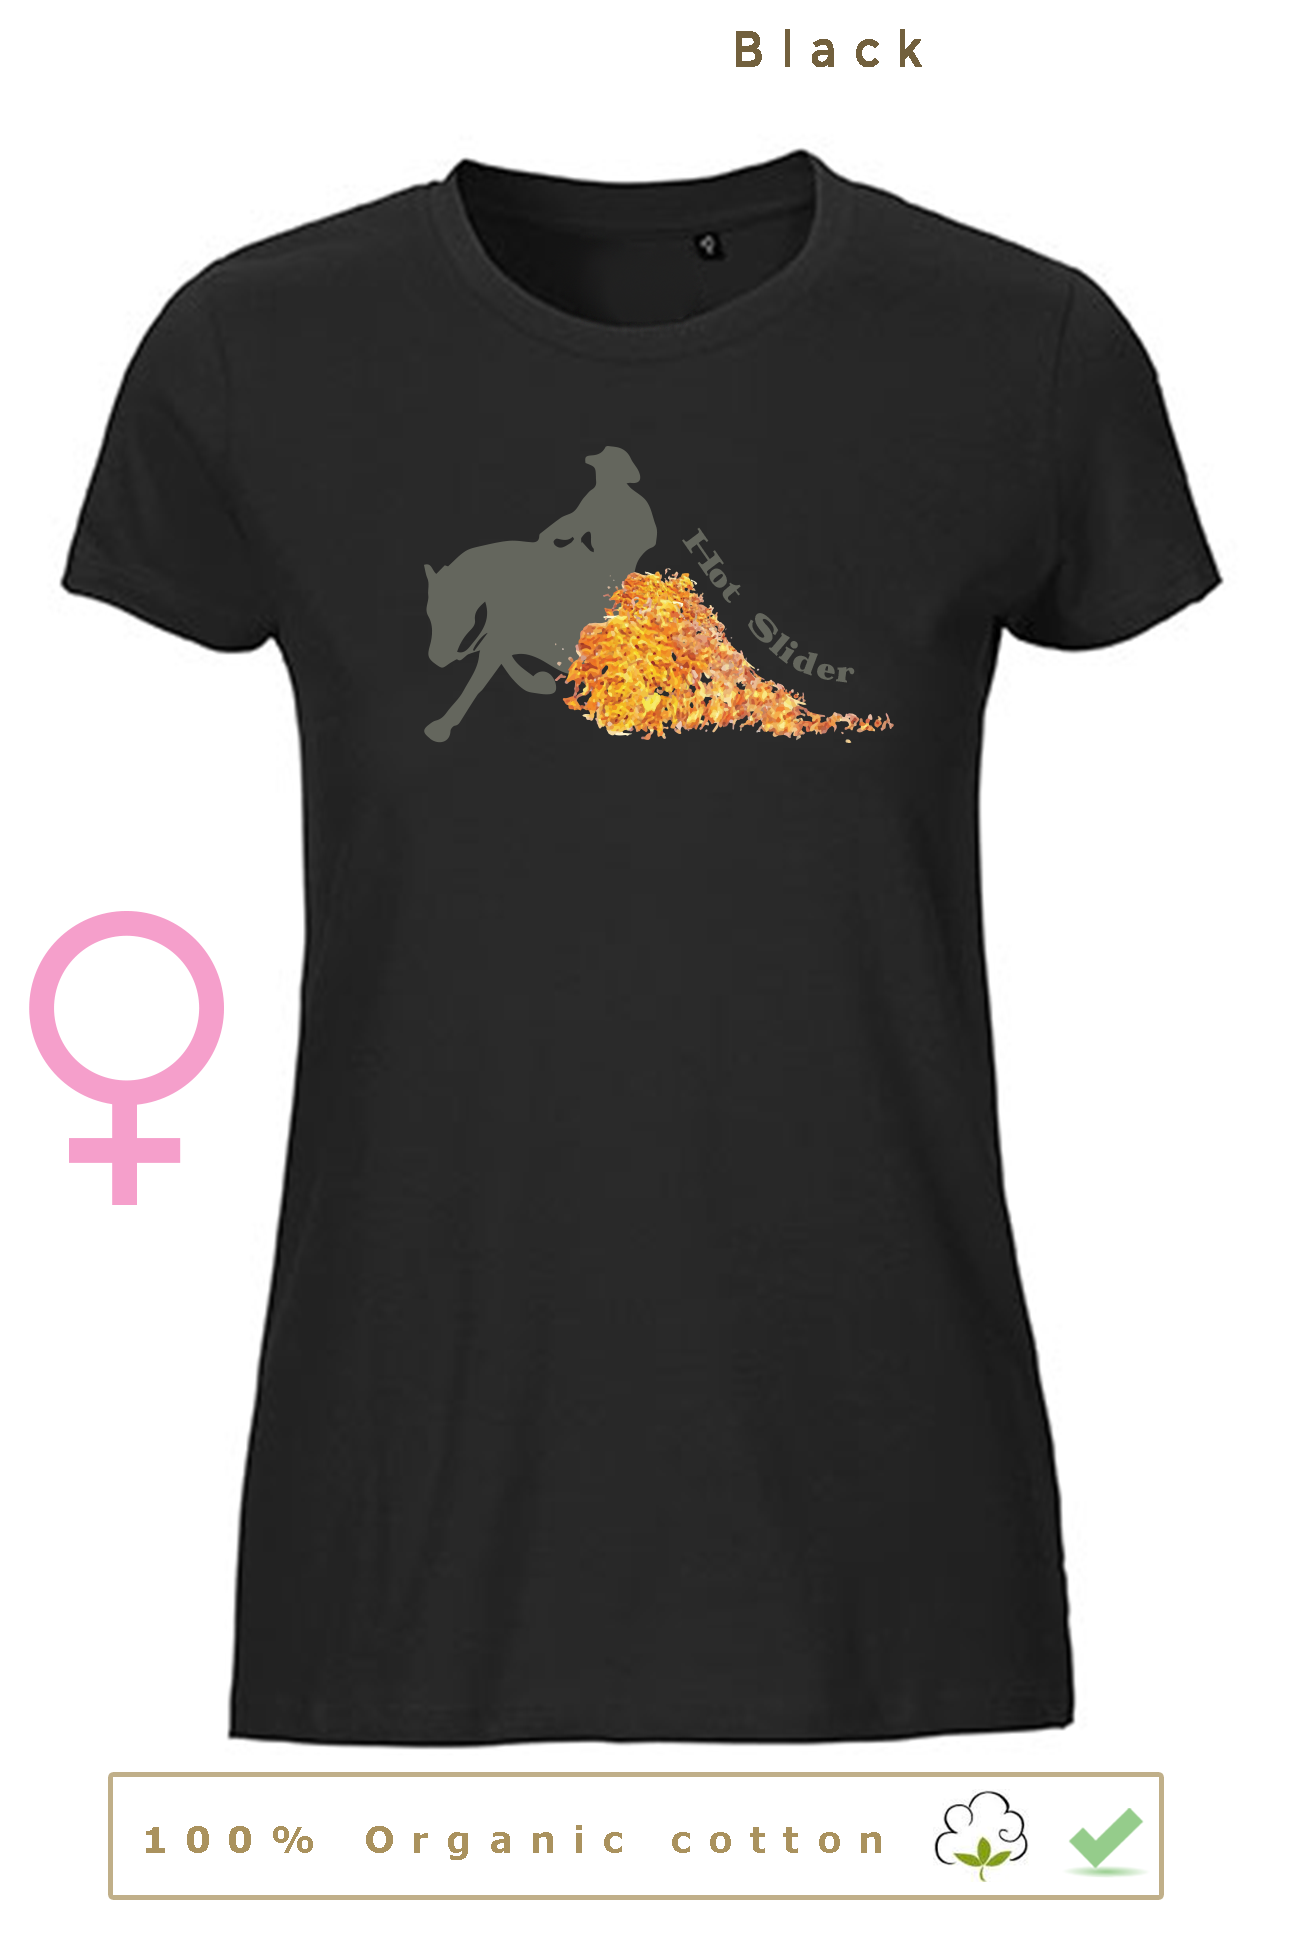 T-shirt BIO, 27€ pour homme/femme & 24€ pour enfant (disponible uniquement en noir)